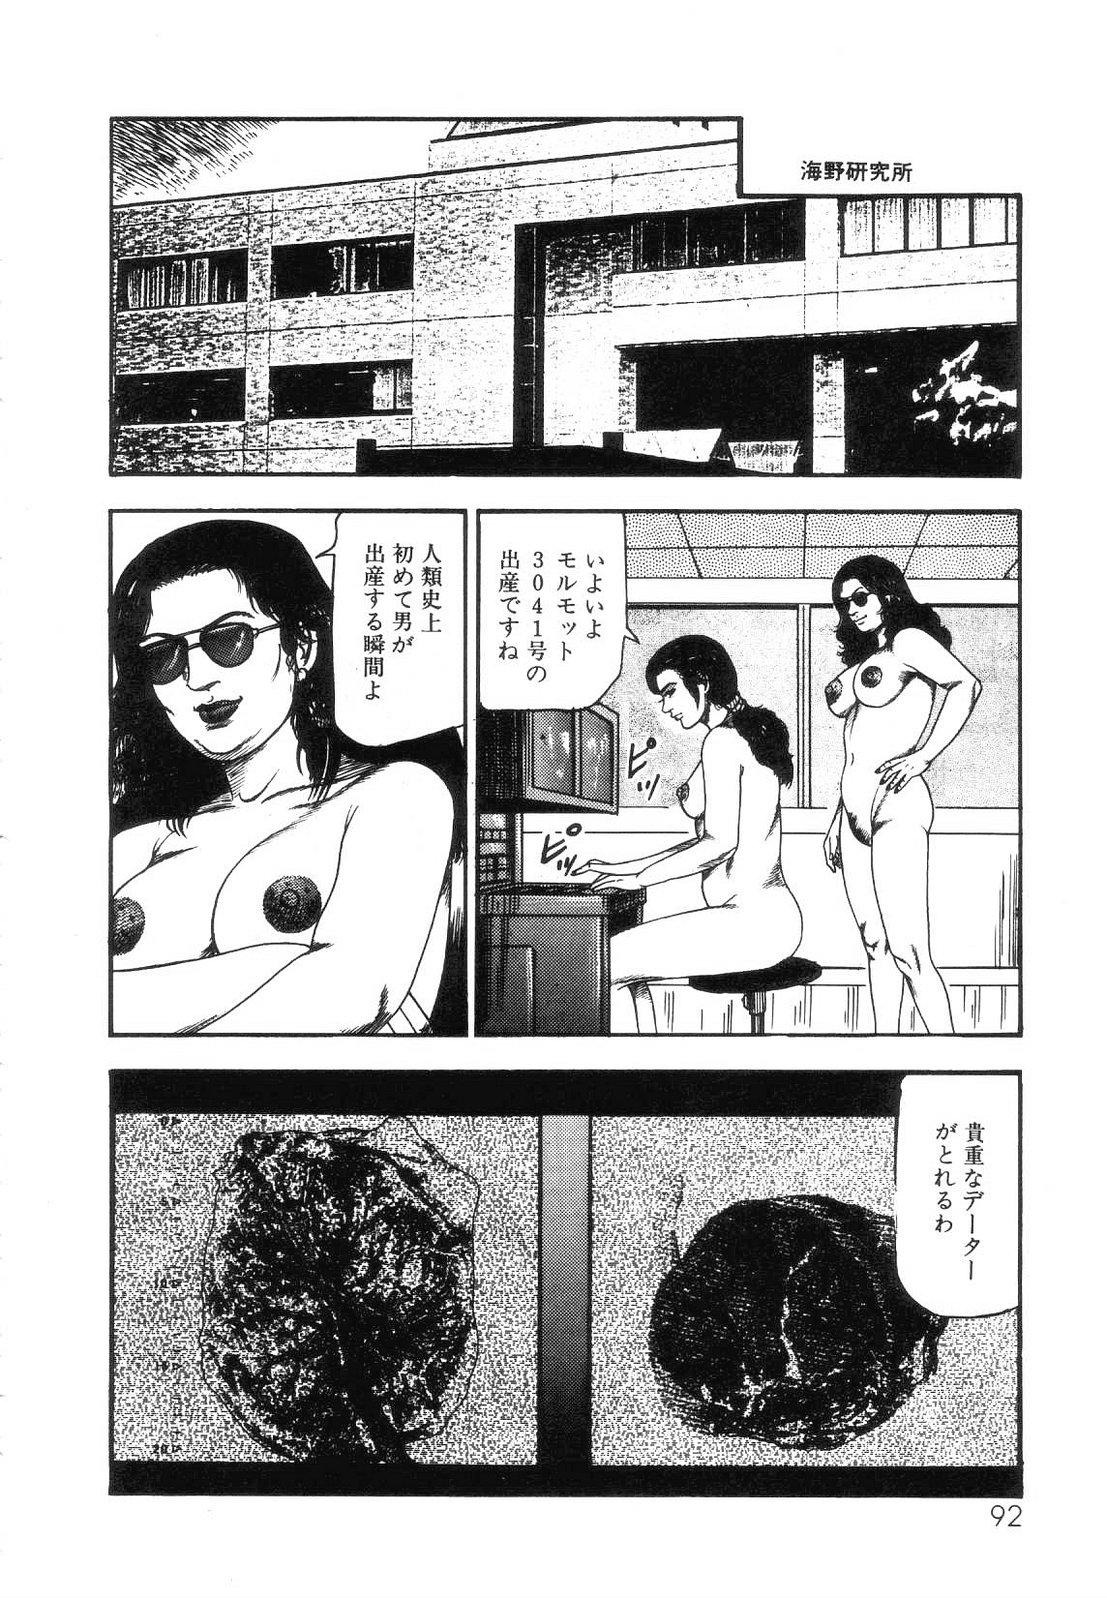 Shiro no Mokushiroku Vol. 5 - Ninshoujo Erika no Shou 93